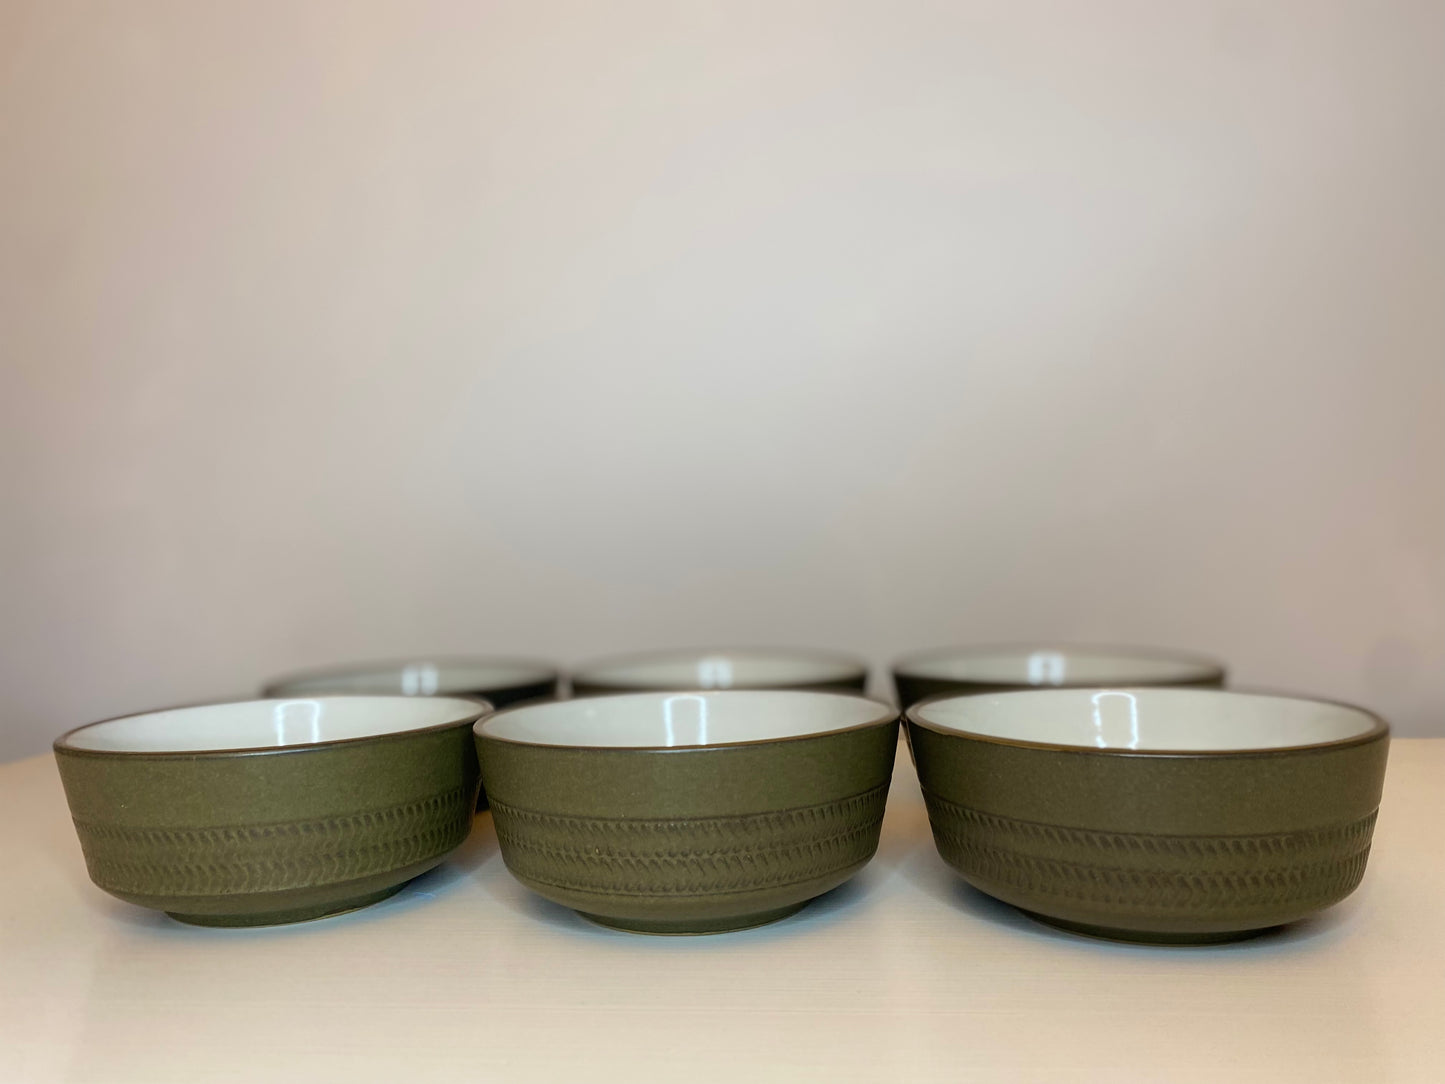 Vintage Green bowls